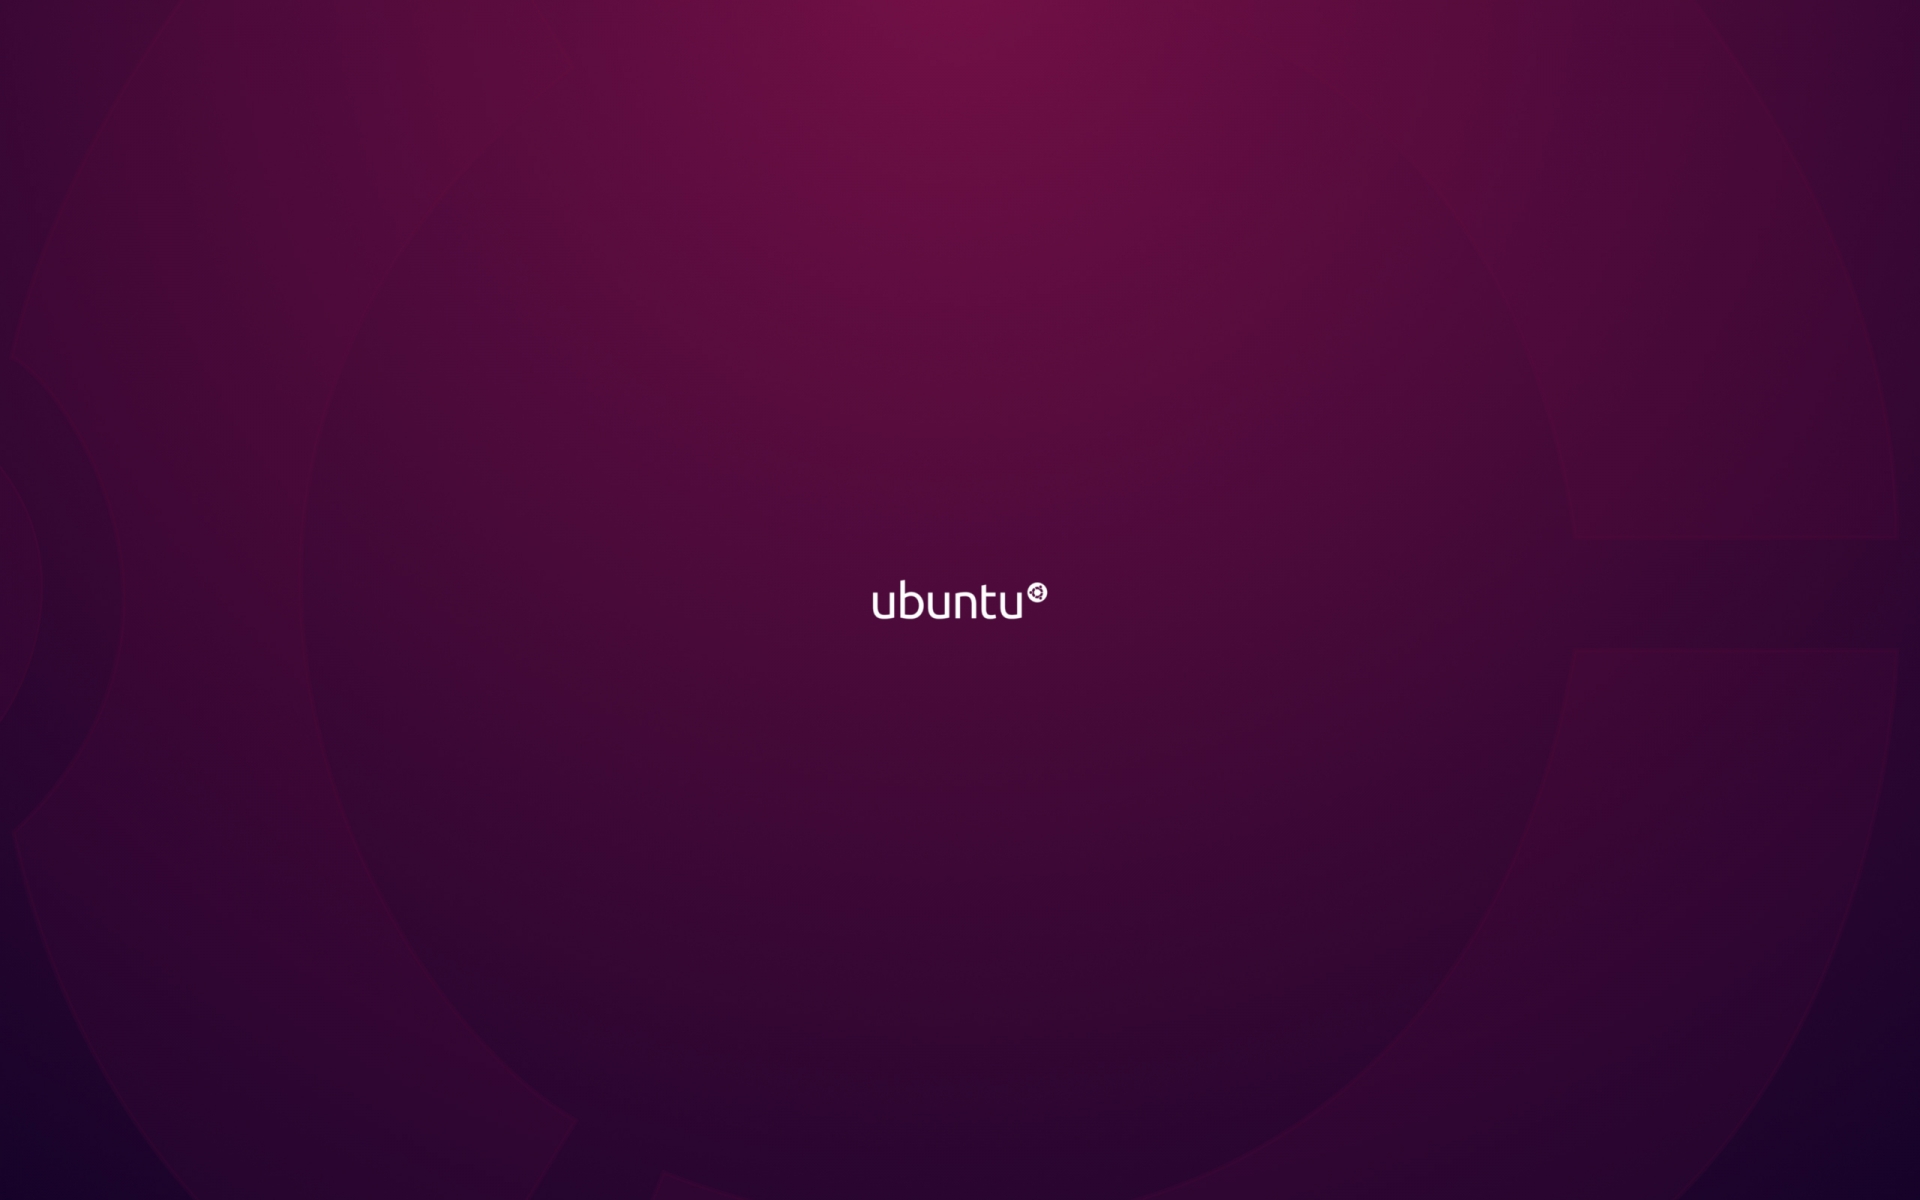 Ubuntu clipart #14, Download drawings